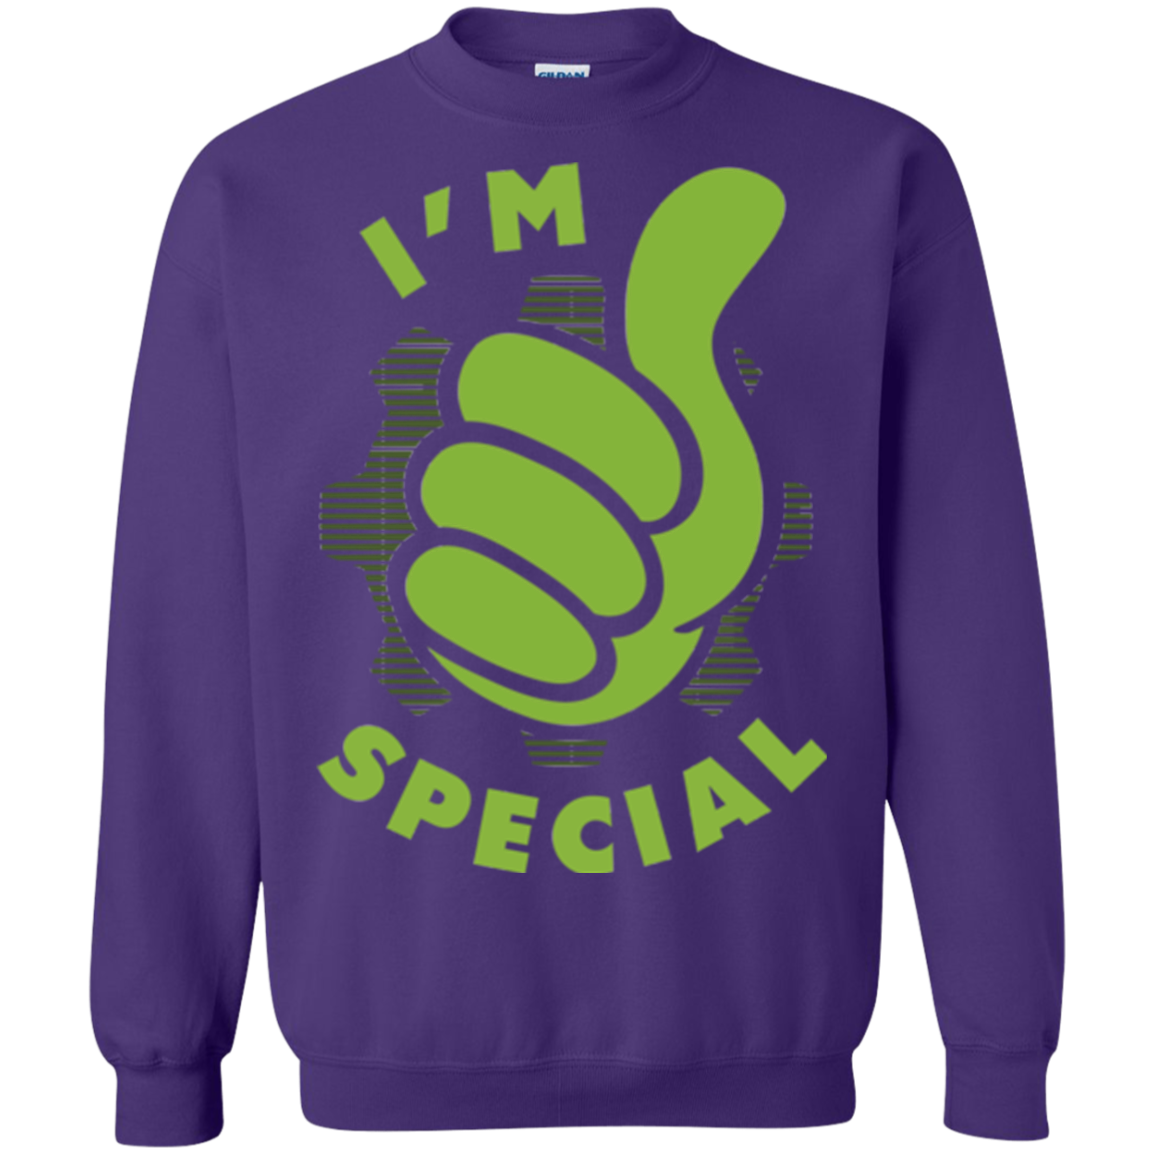 Special Dweller Crewneck Sweatshirt